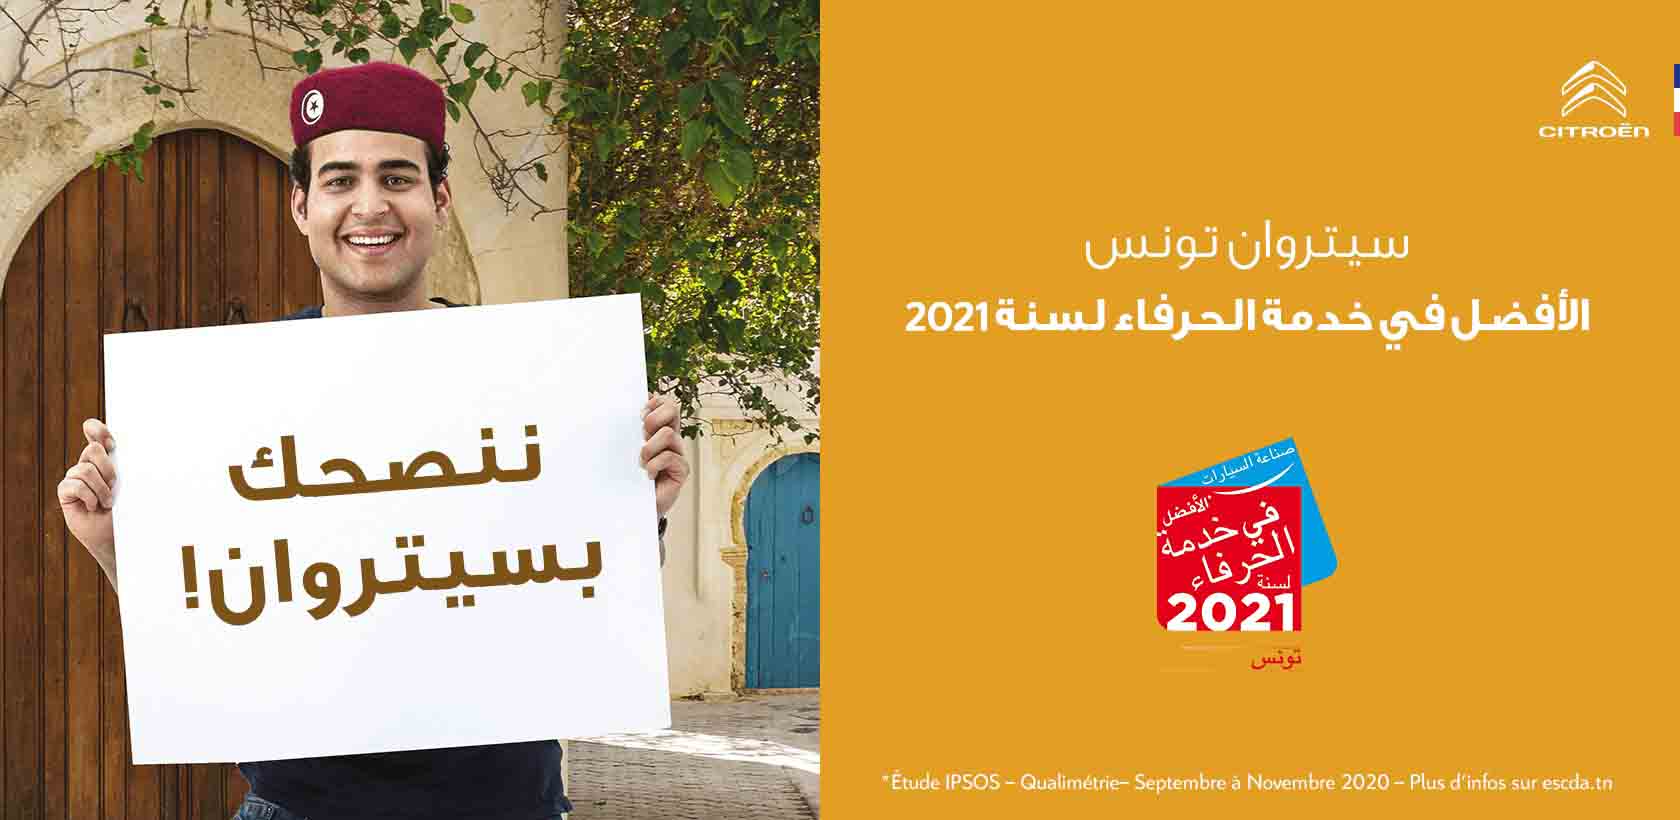 CITROËN TUNISIE "ELU SERVICE CLIENT DE L'ANNÉE 2021"